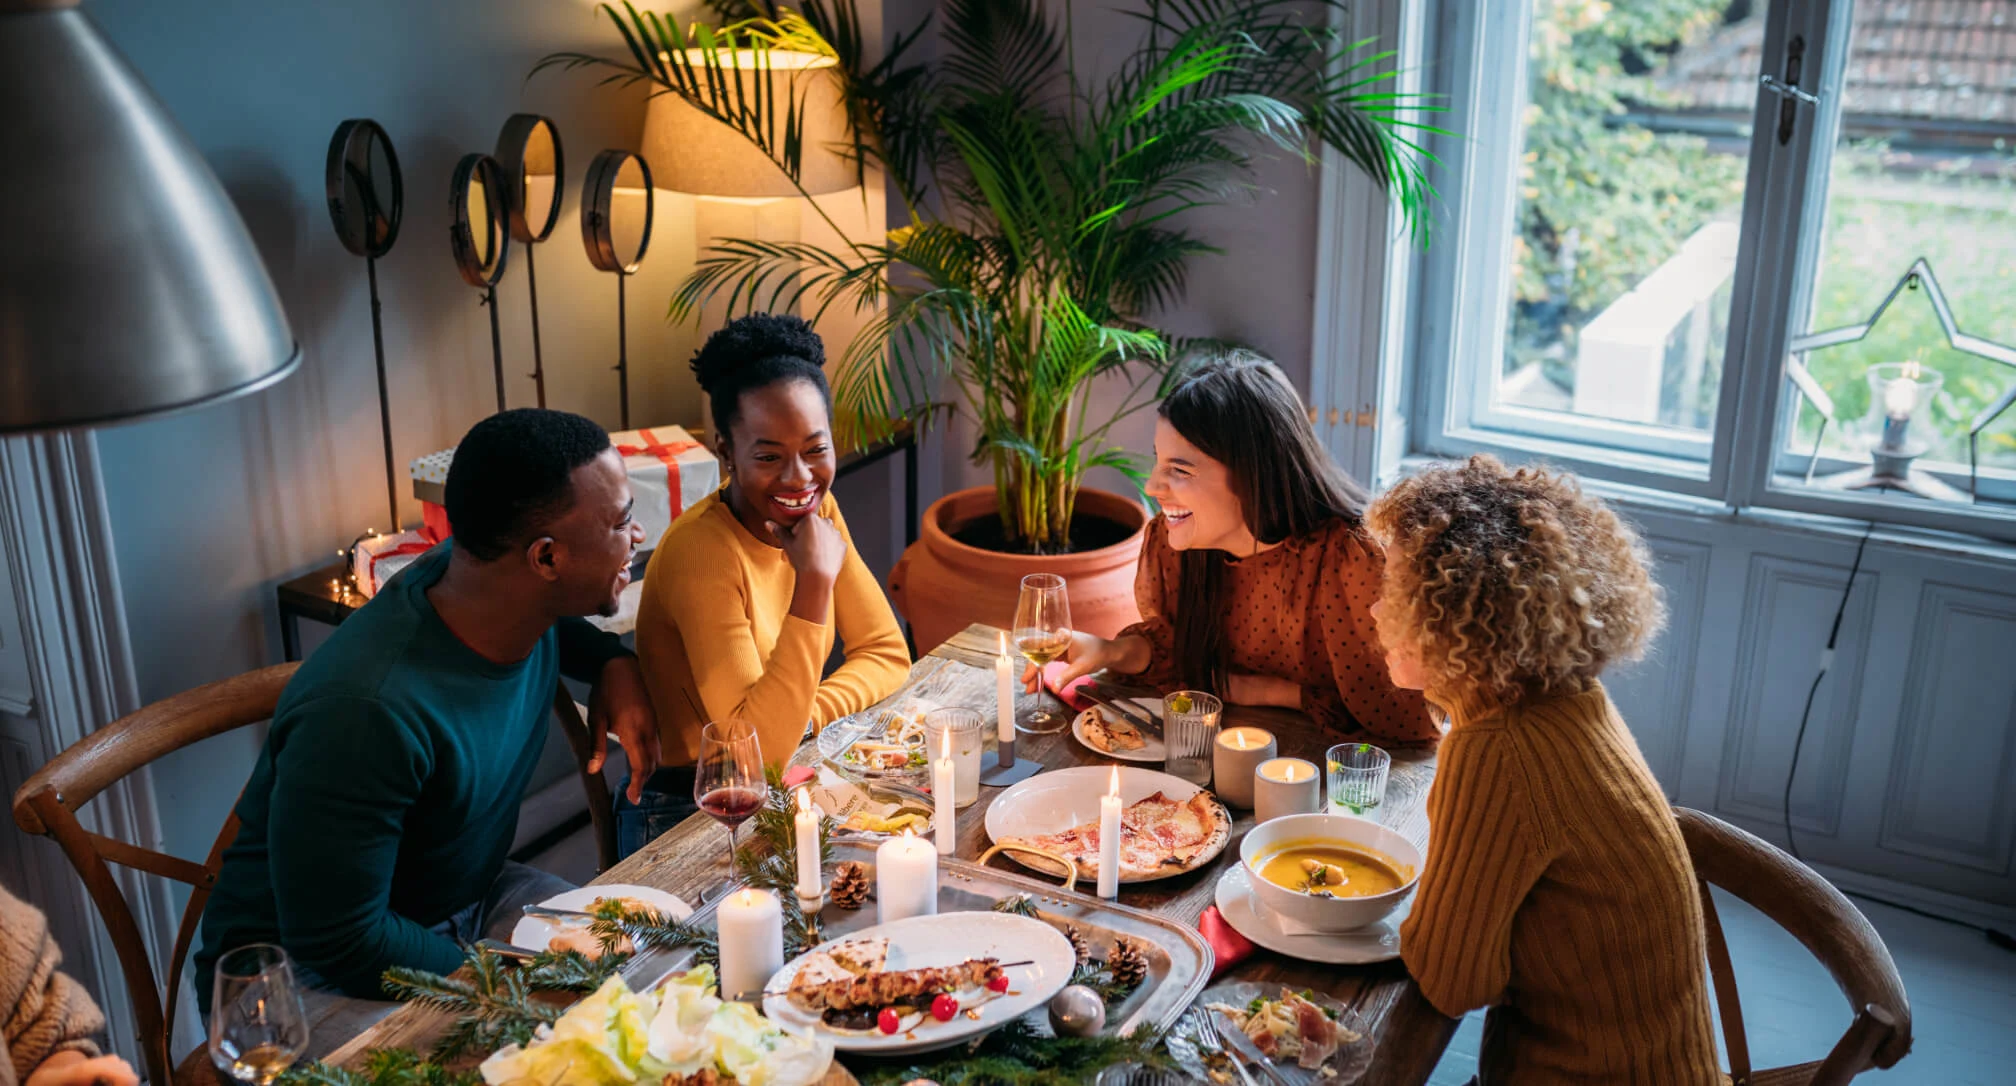 Vier Personen im Gespräch an einem Esstisch. Auf dem Tisch stehen verschiedene Teller mit Essen und dekorative Kerzen. Tageslicht fällt durch ein Fenster.